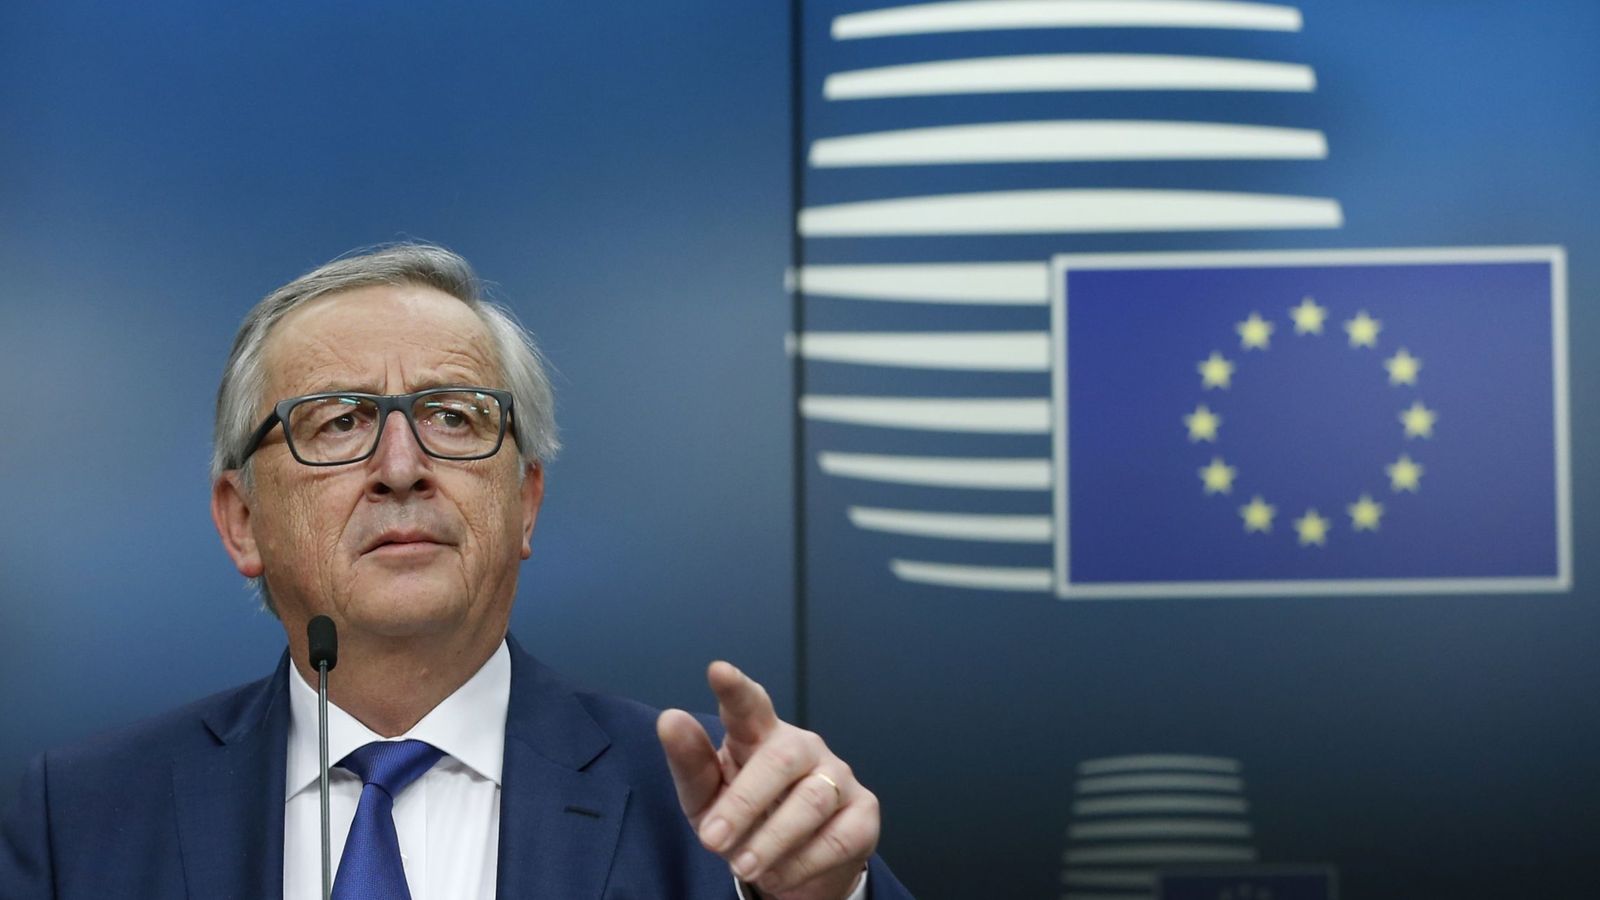 Foto: Jean-Claude Juncker durante una rueda de prensa en el transcurso de la Cumbre de Líderes de la UE en Bruselas, el 23 de marzo de 2018. (Reuters)